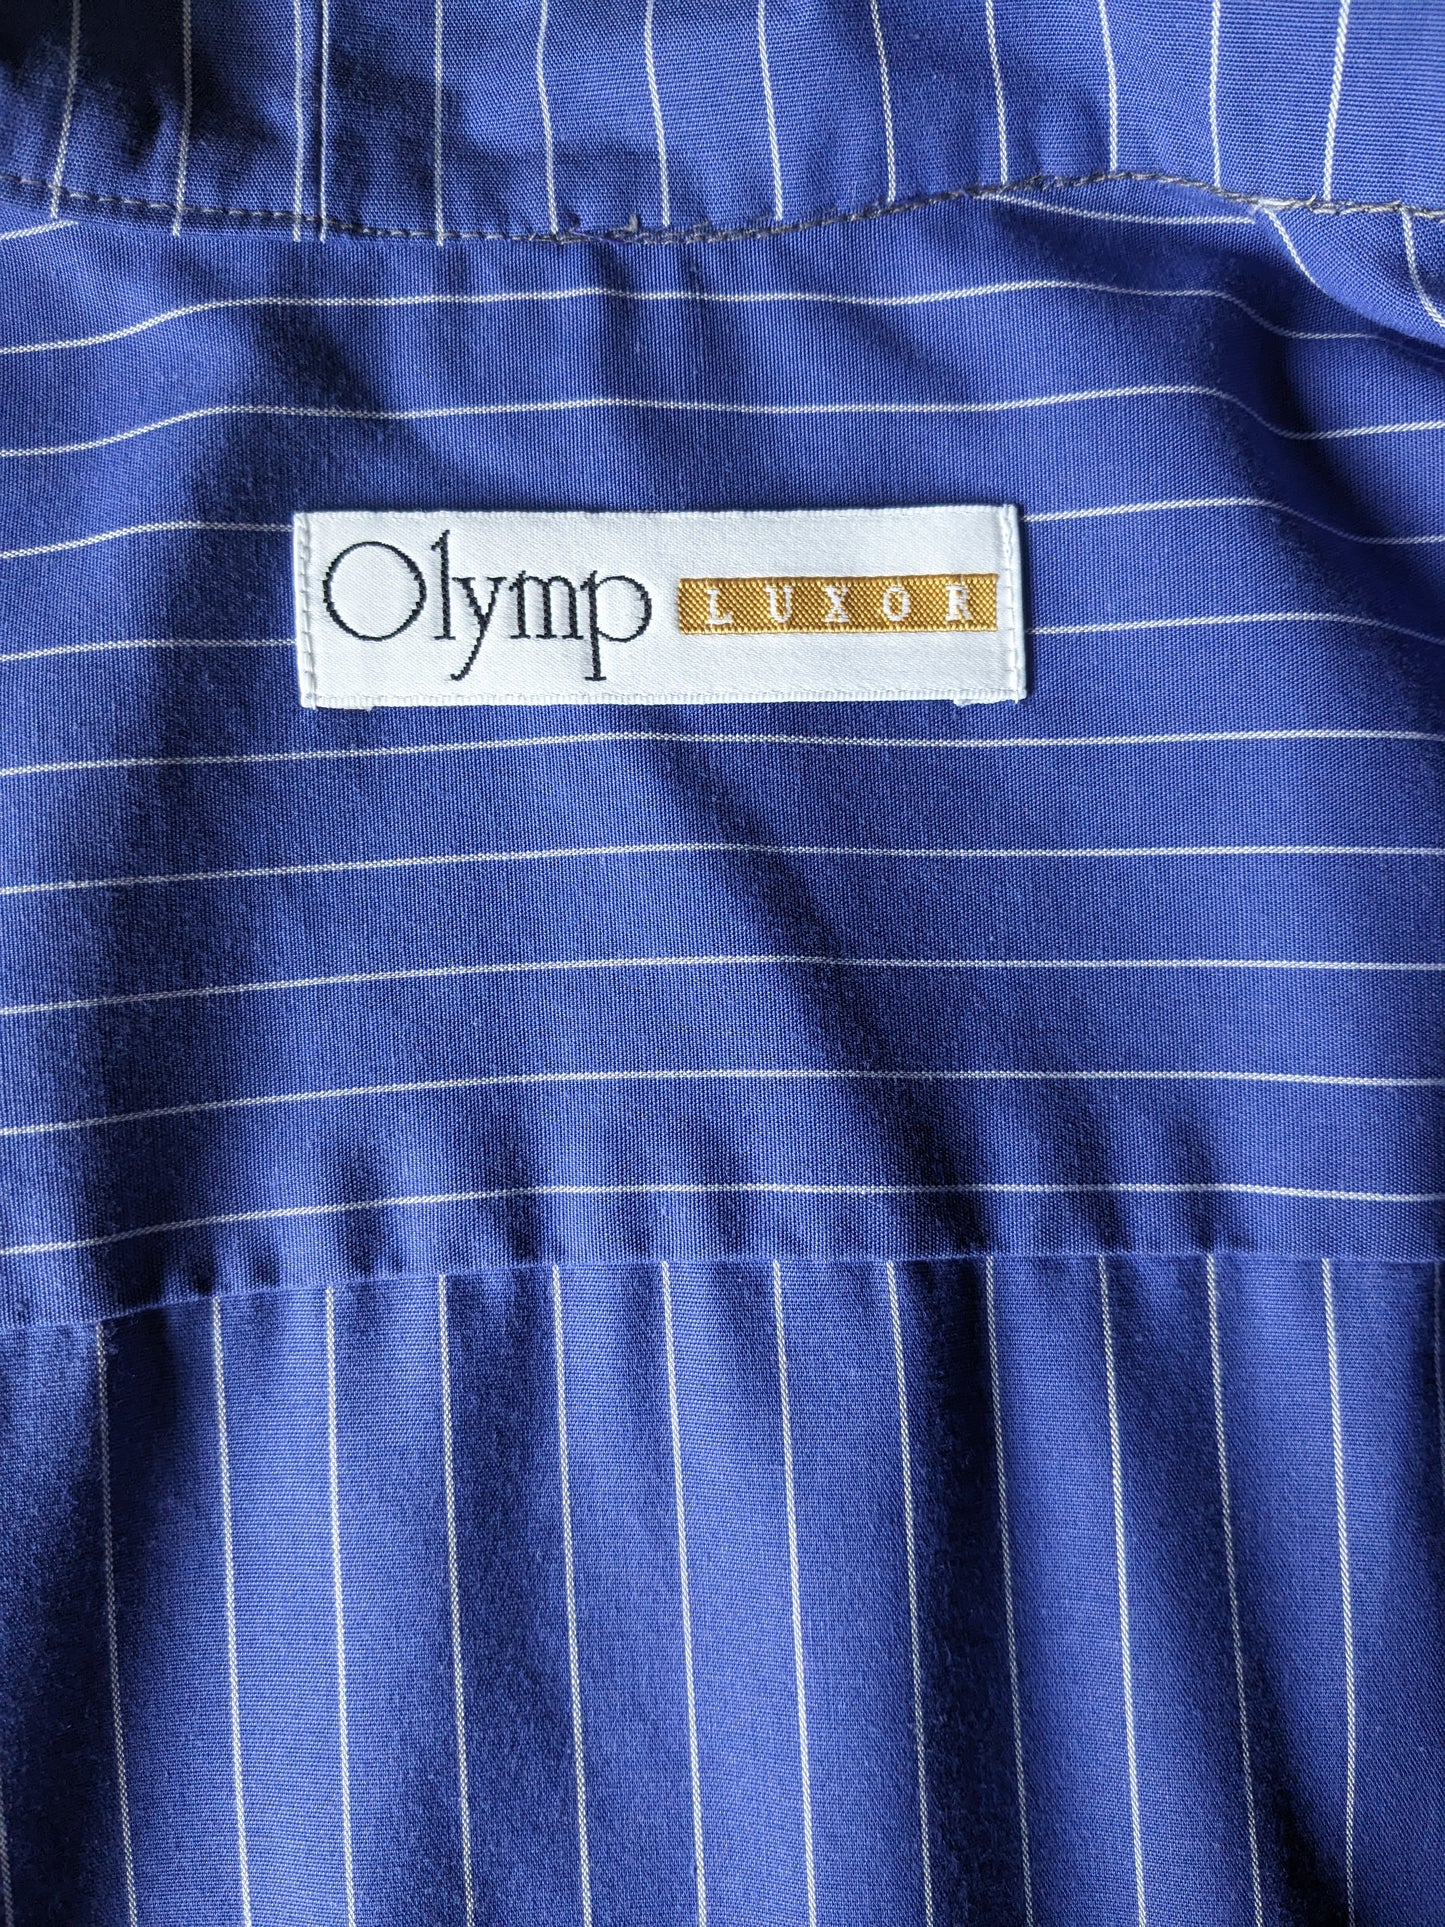 Chemise Olympy Louxor vintage avec mao / agriculteur / col debout. Blanc bleu rayé. Taille L.